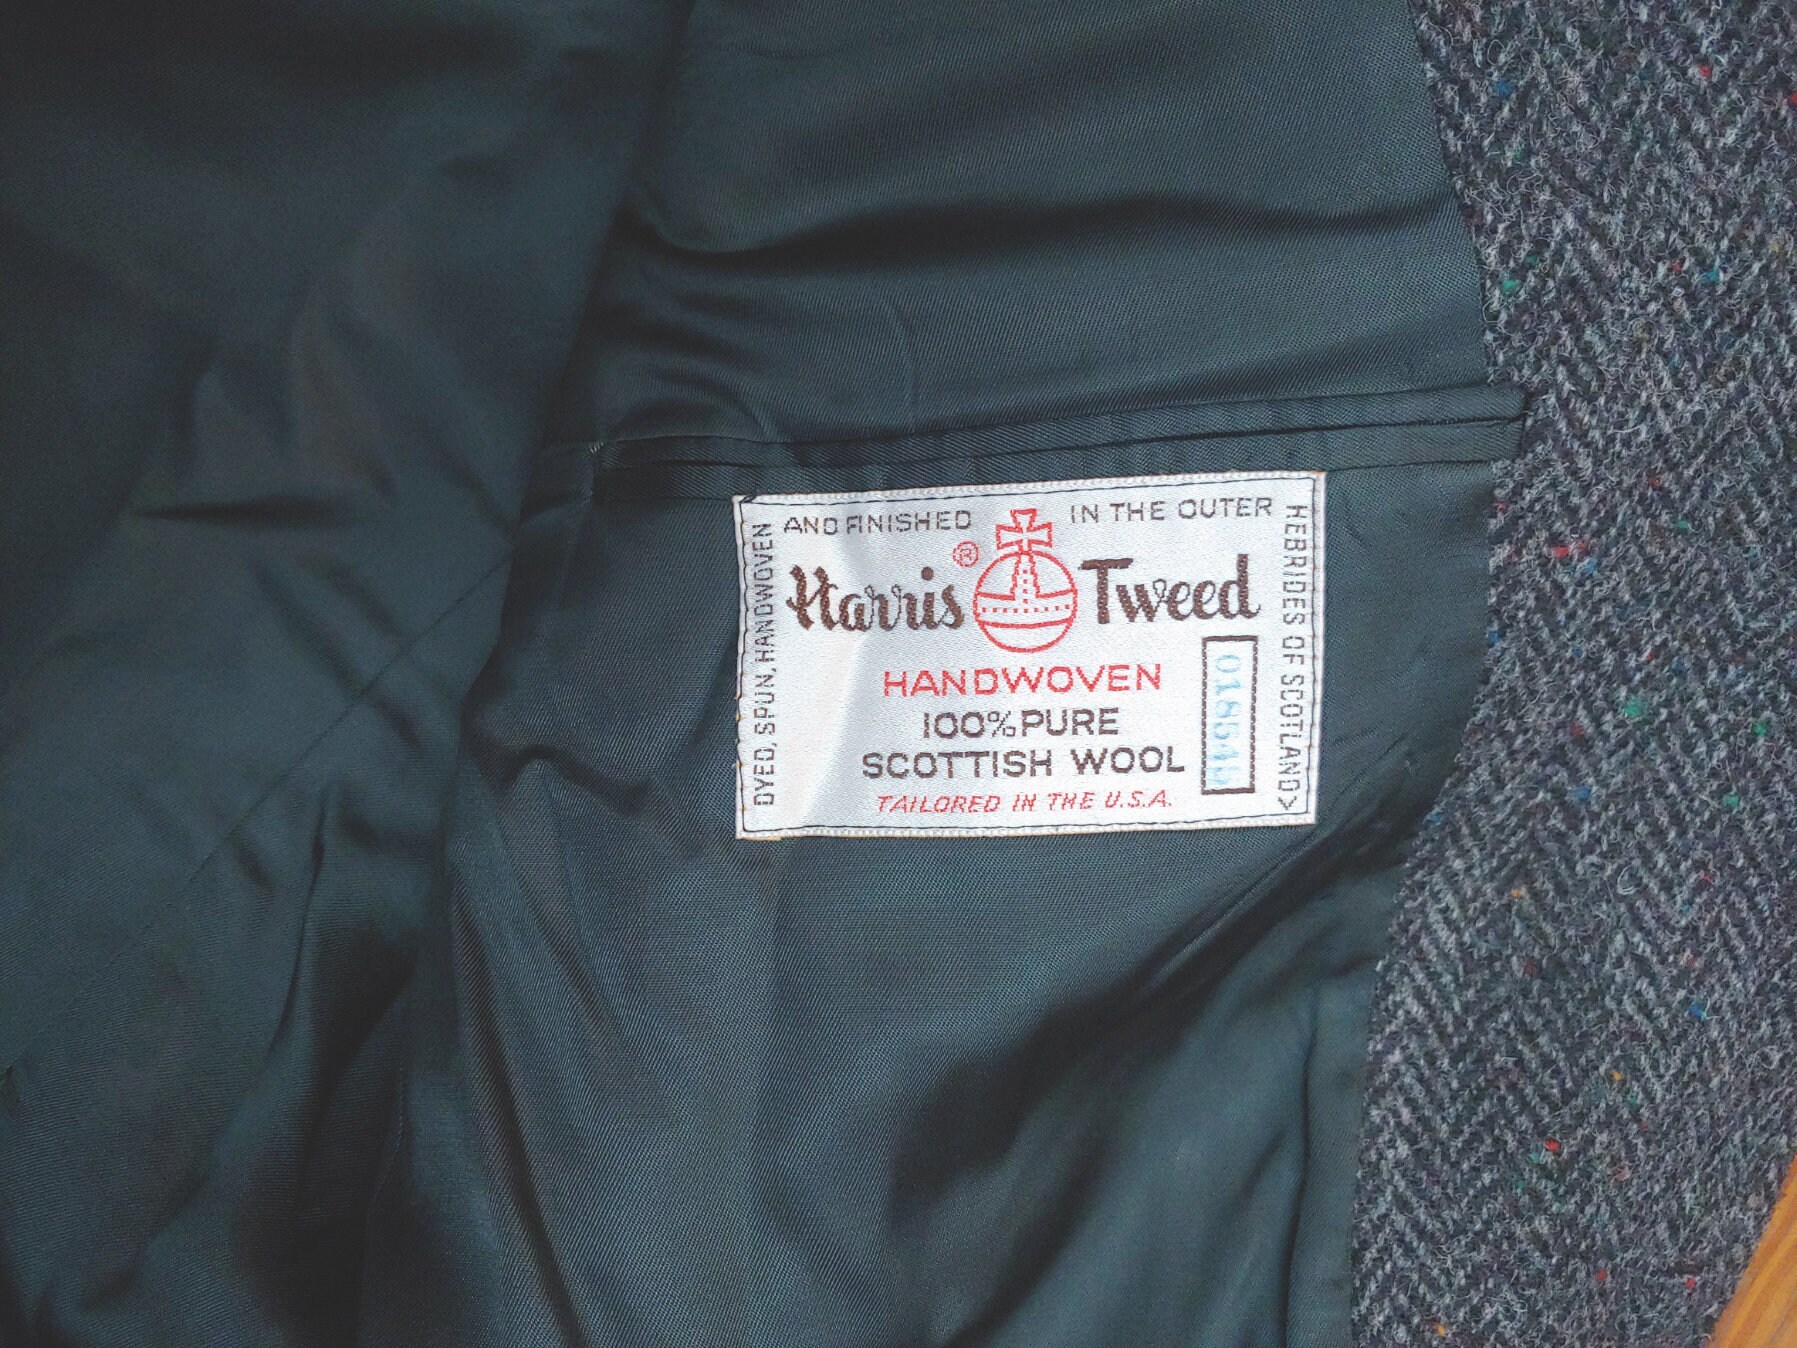 Donegal Knit Harris Tweed Jacket in Black and Grey Herringbone - Etsy